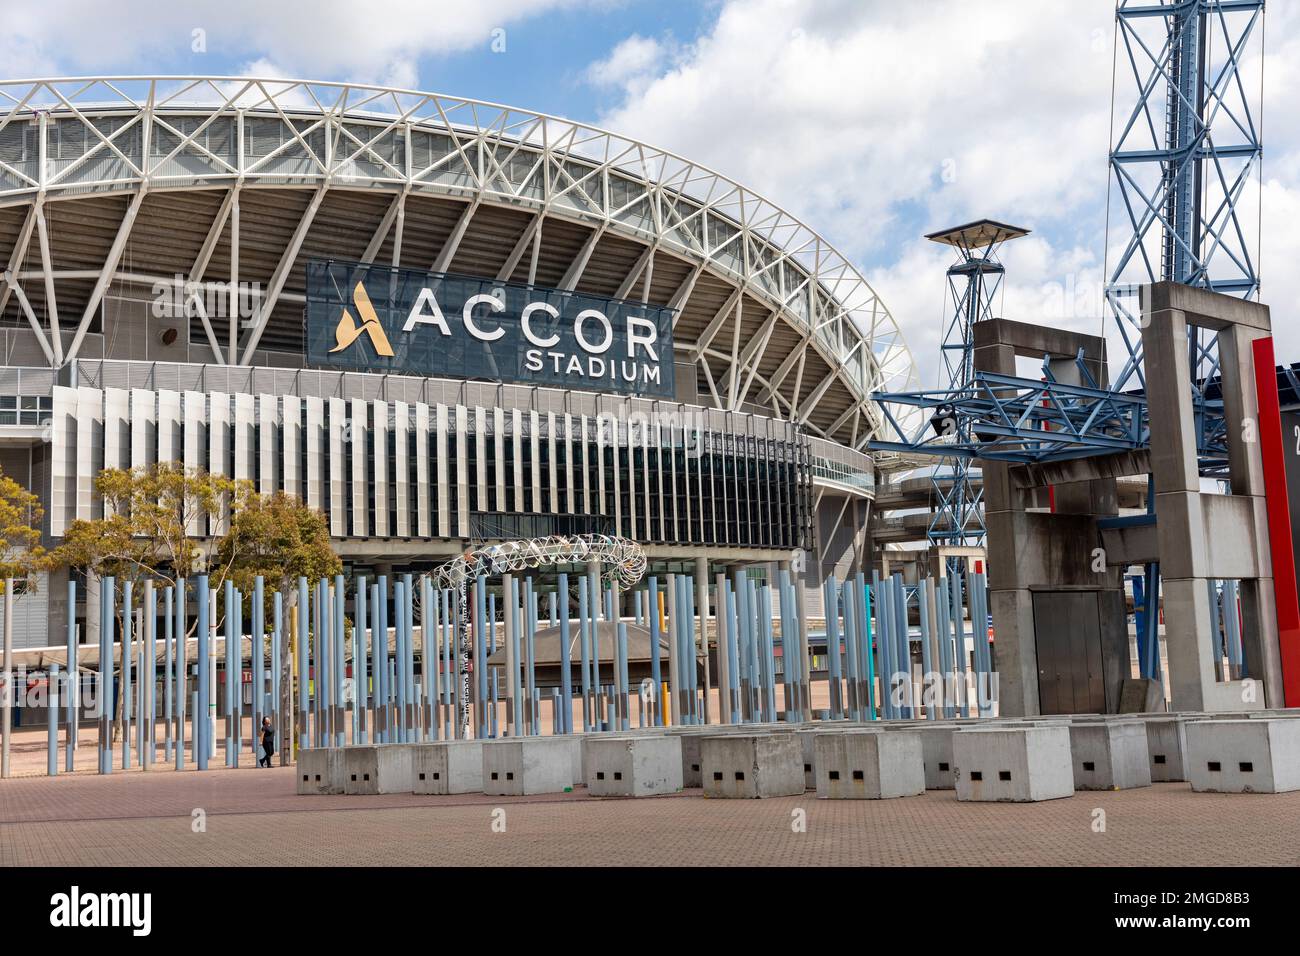 Stadion Australia, Olympiastadion im Sydney Olympic Park, heute bekannt als Accor Stadium, befindet sich im Besitz von NSW Government, Sydney, NSW, Australien Stockfoto